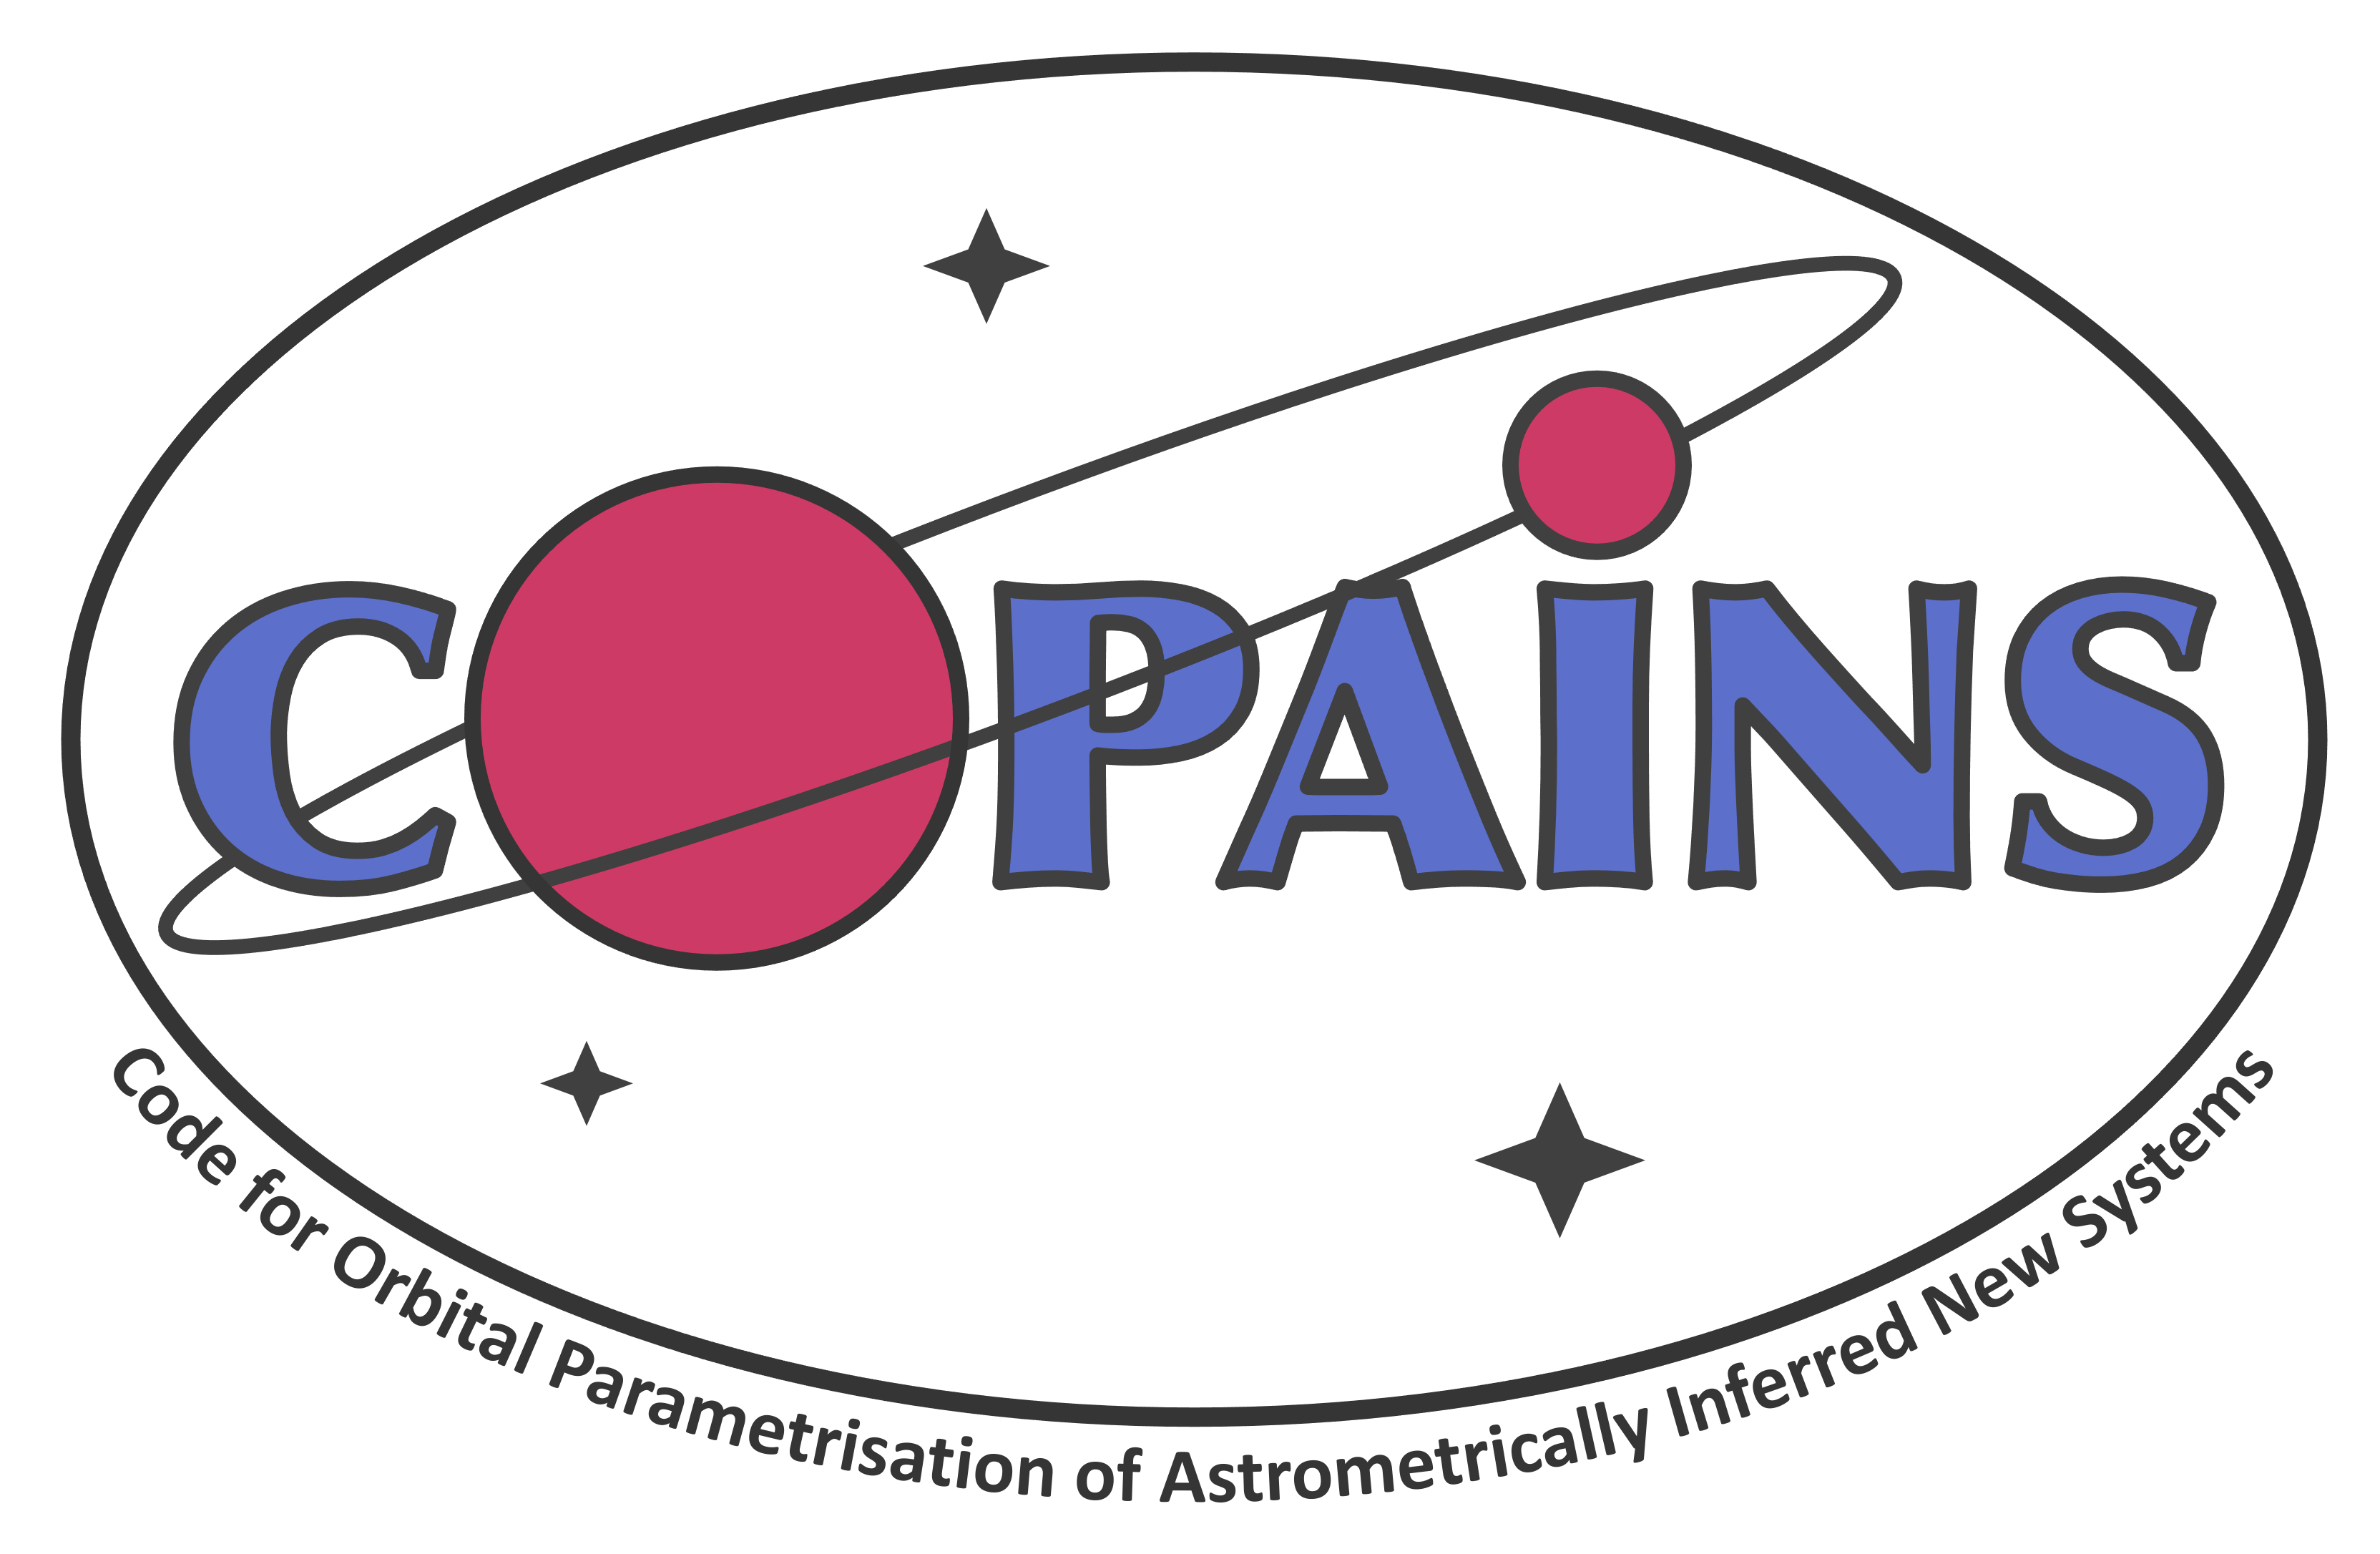 Fontanive COPAINS astrometry imaging